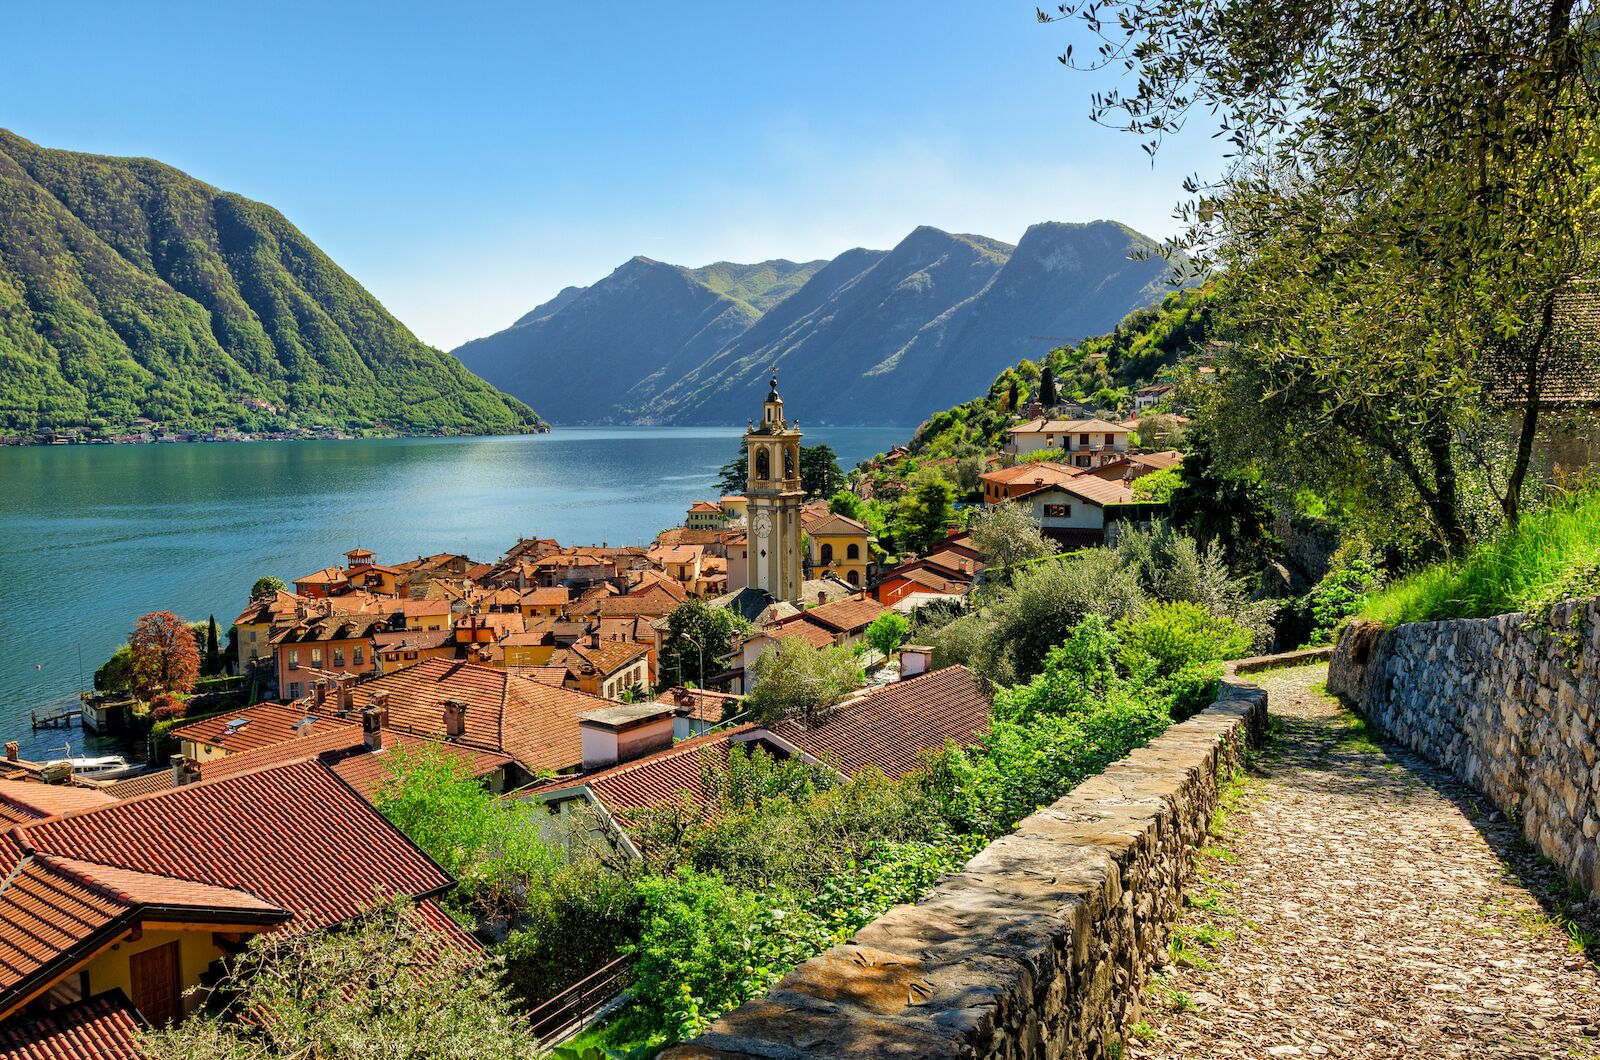 Town along the banks of Lake Como